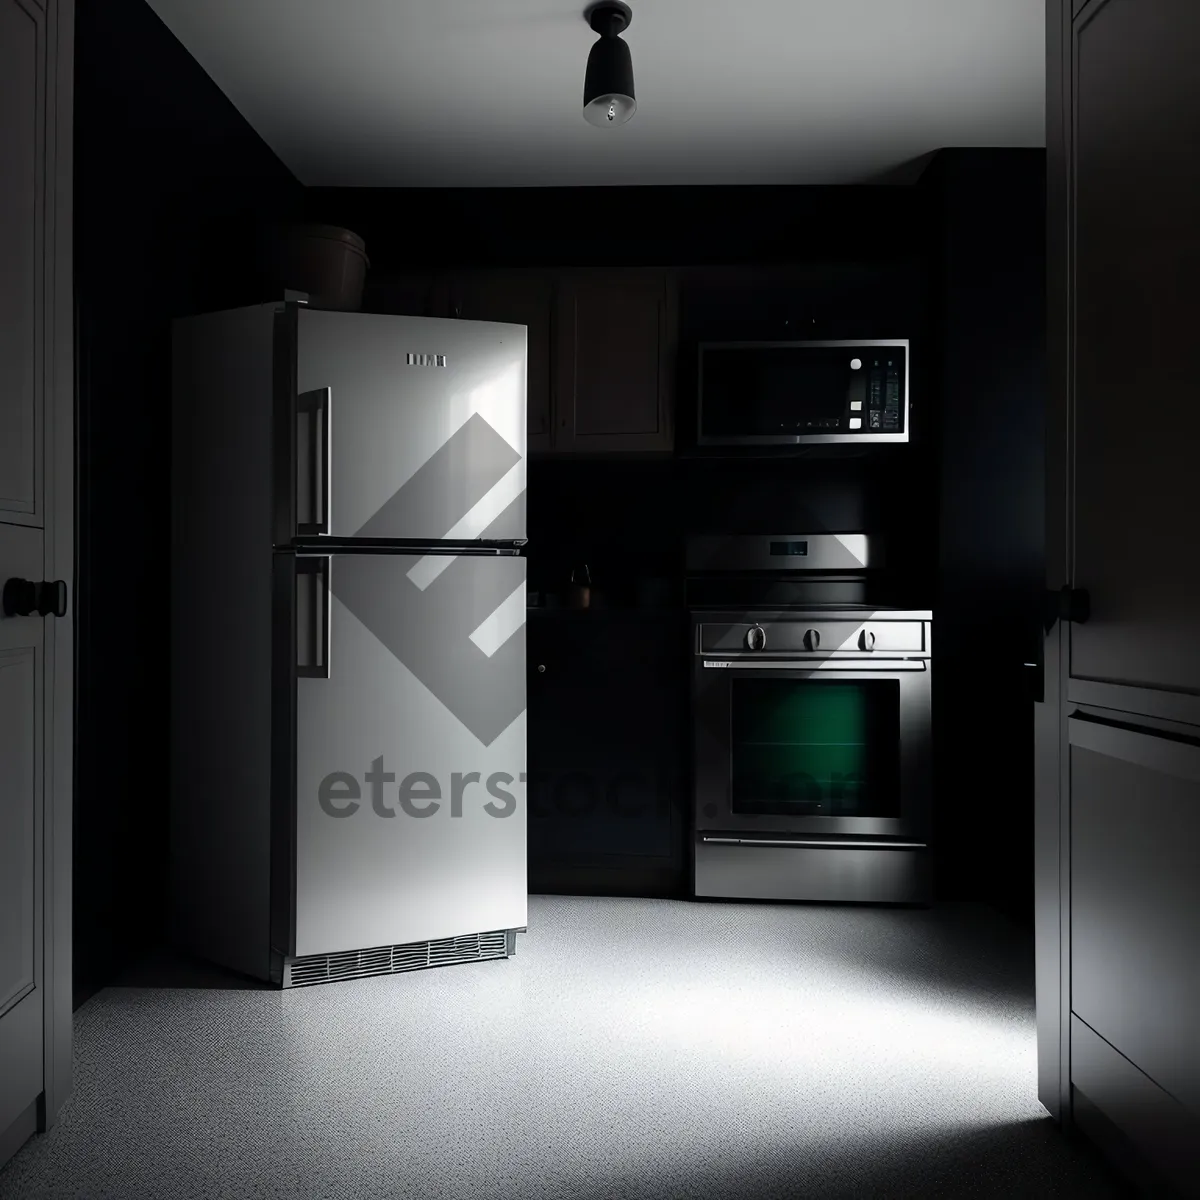 Picture of Modern Refrigerator in Sleek Kitchen Design